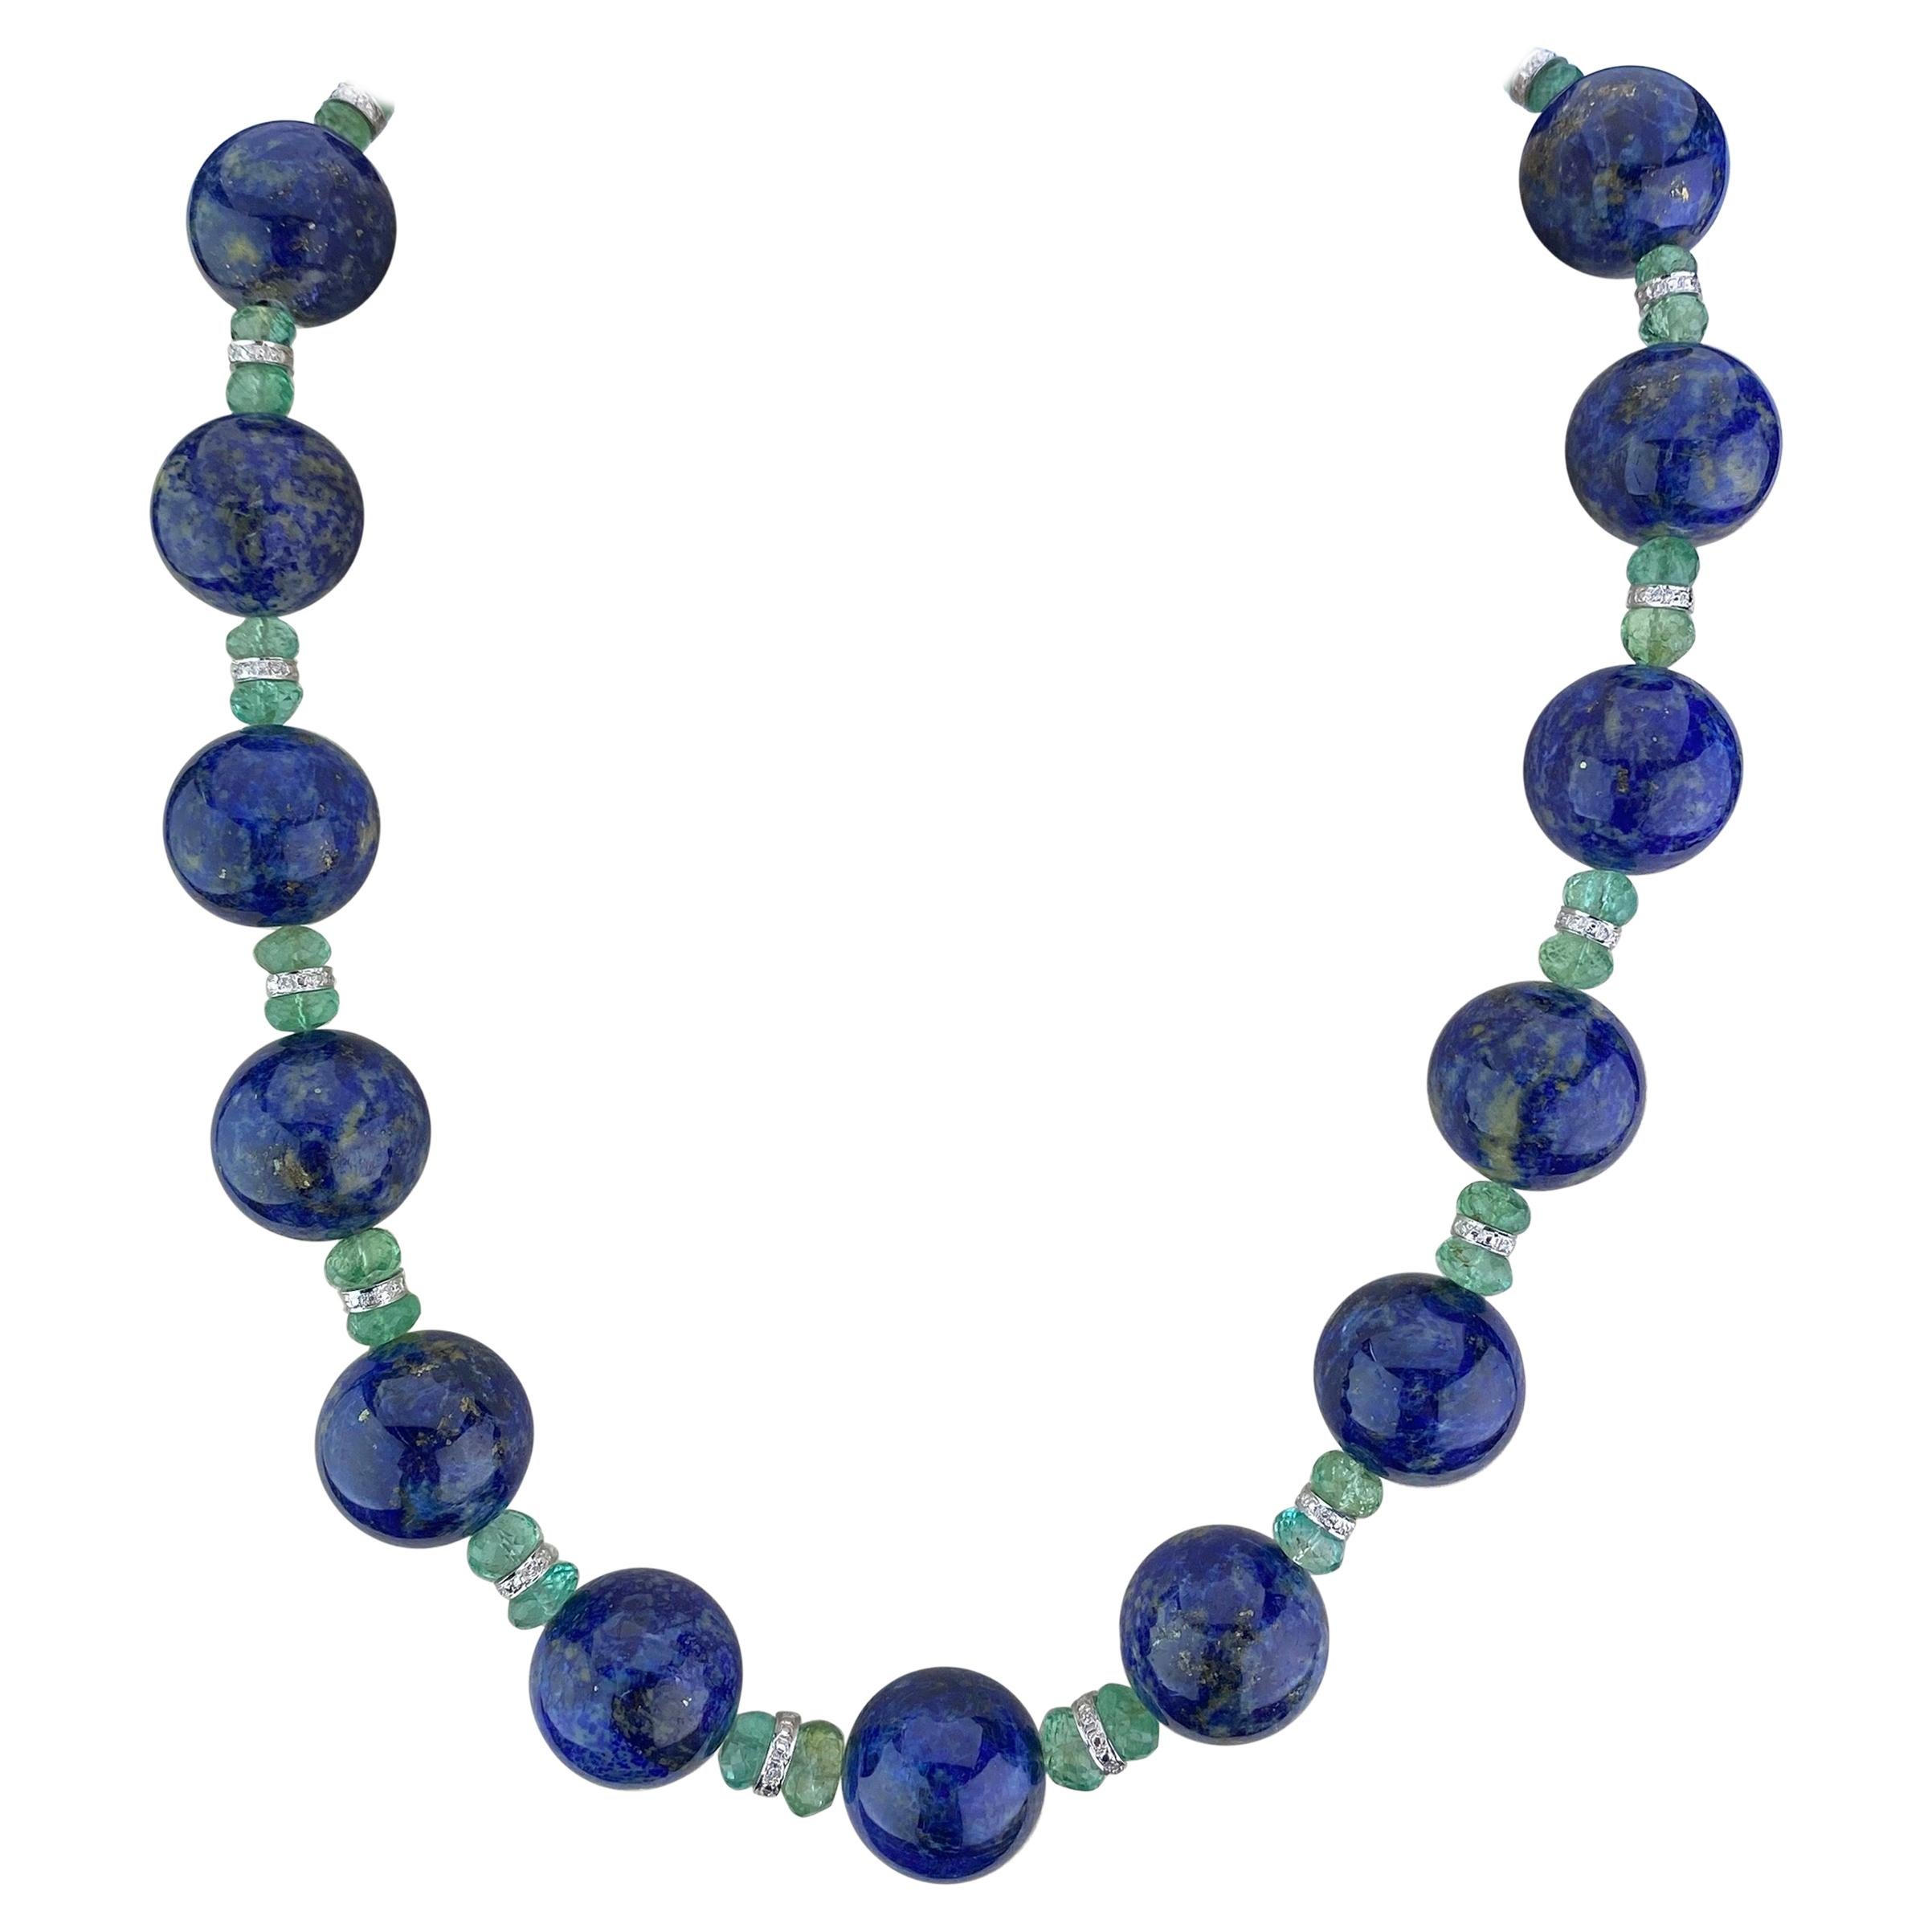 956.60 Carat Lapis Lazuli and Emerald Beaded Necklace